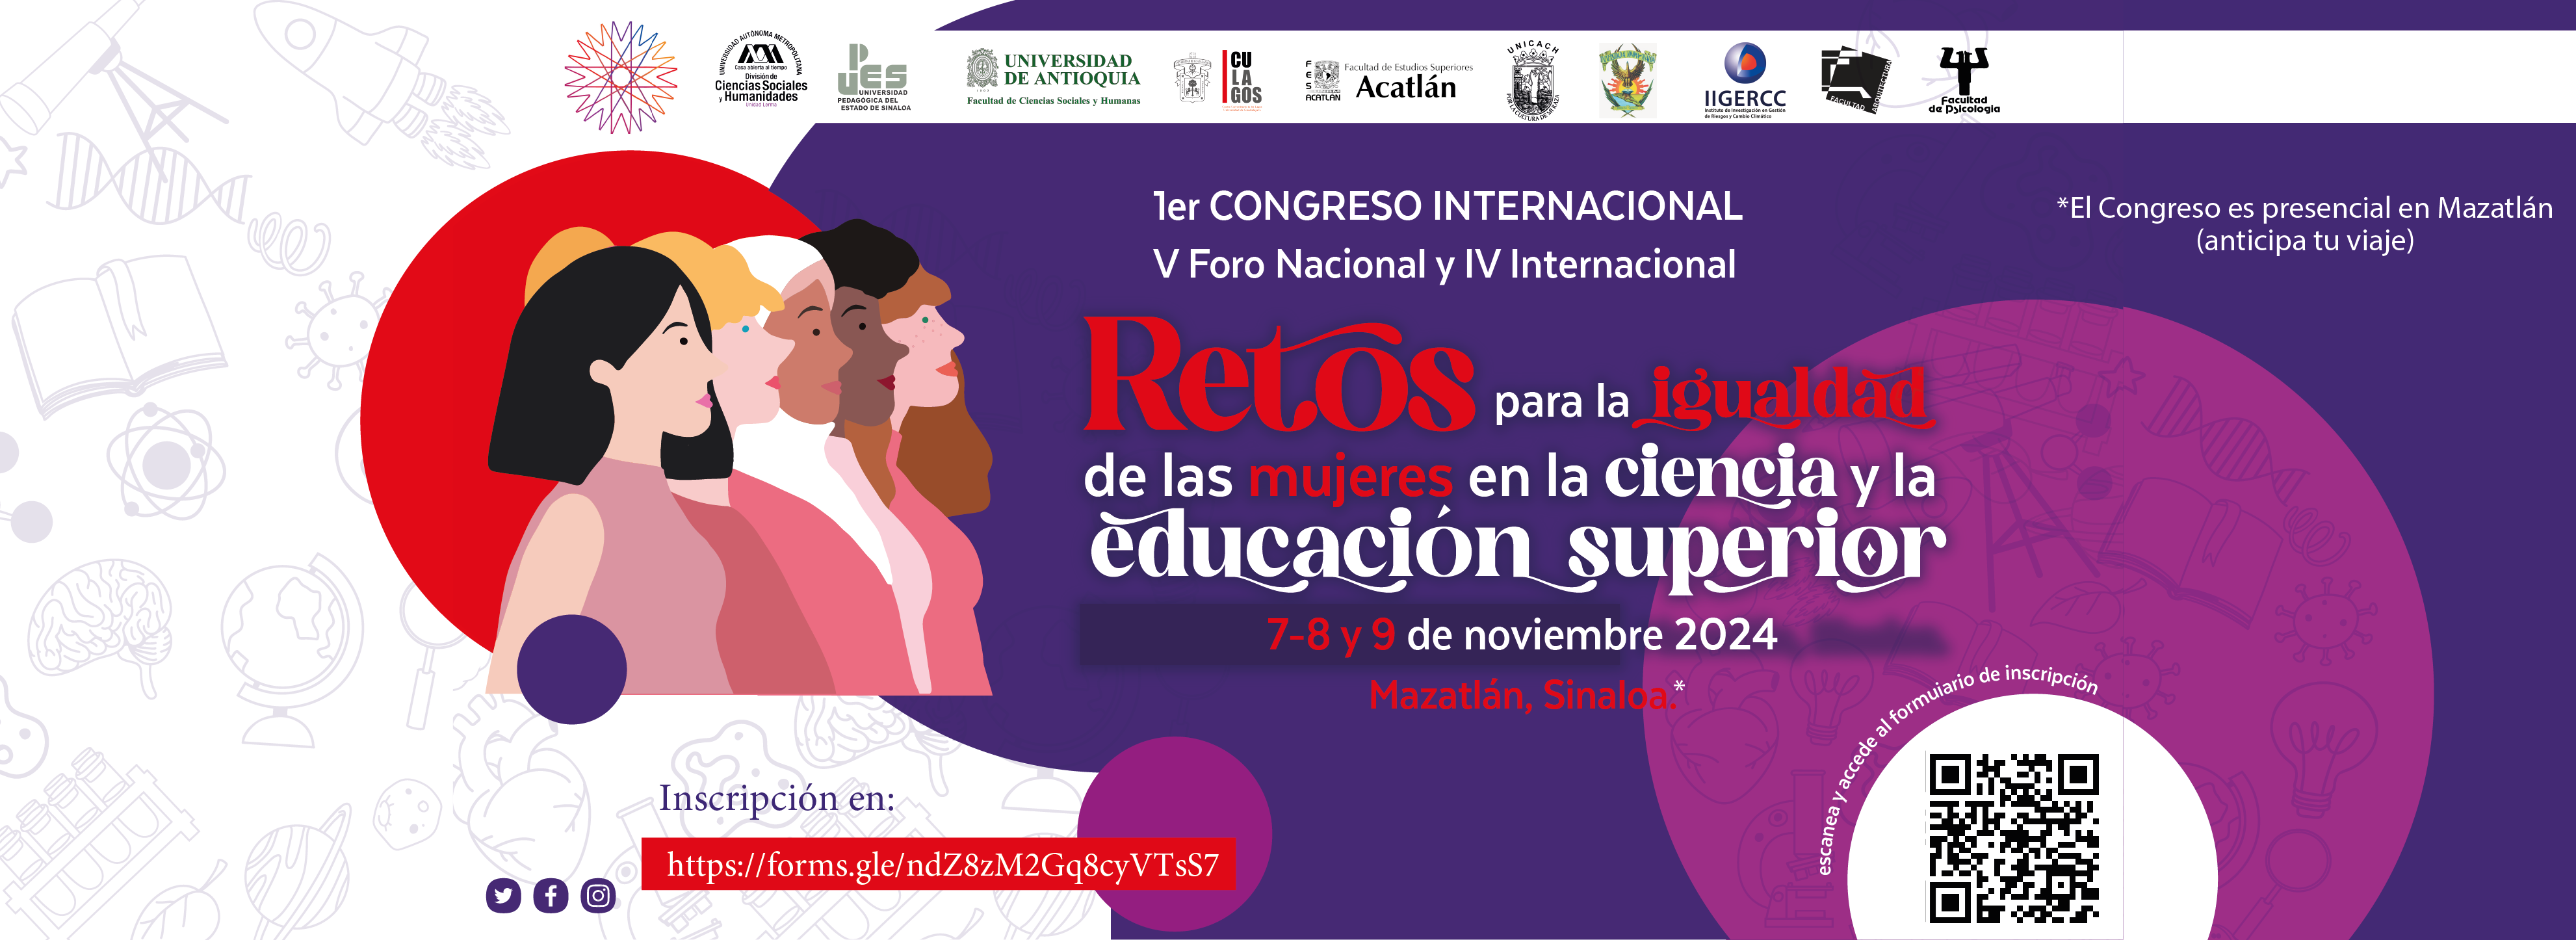 Congreso_Retos_para_la_igualdad_de_las_mujeres_en_la_ciencia_y_la_educacion_superior_banner_web